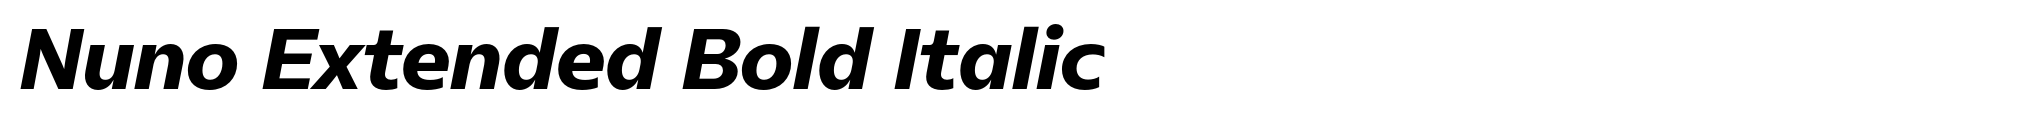 Nuno Extended Bold Italic image